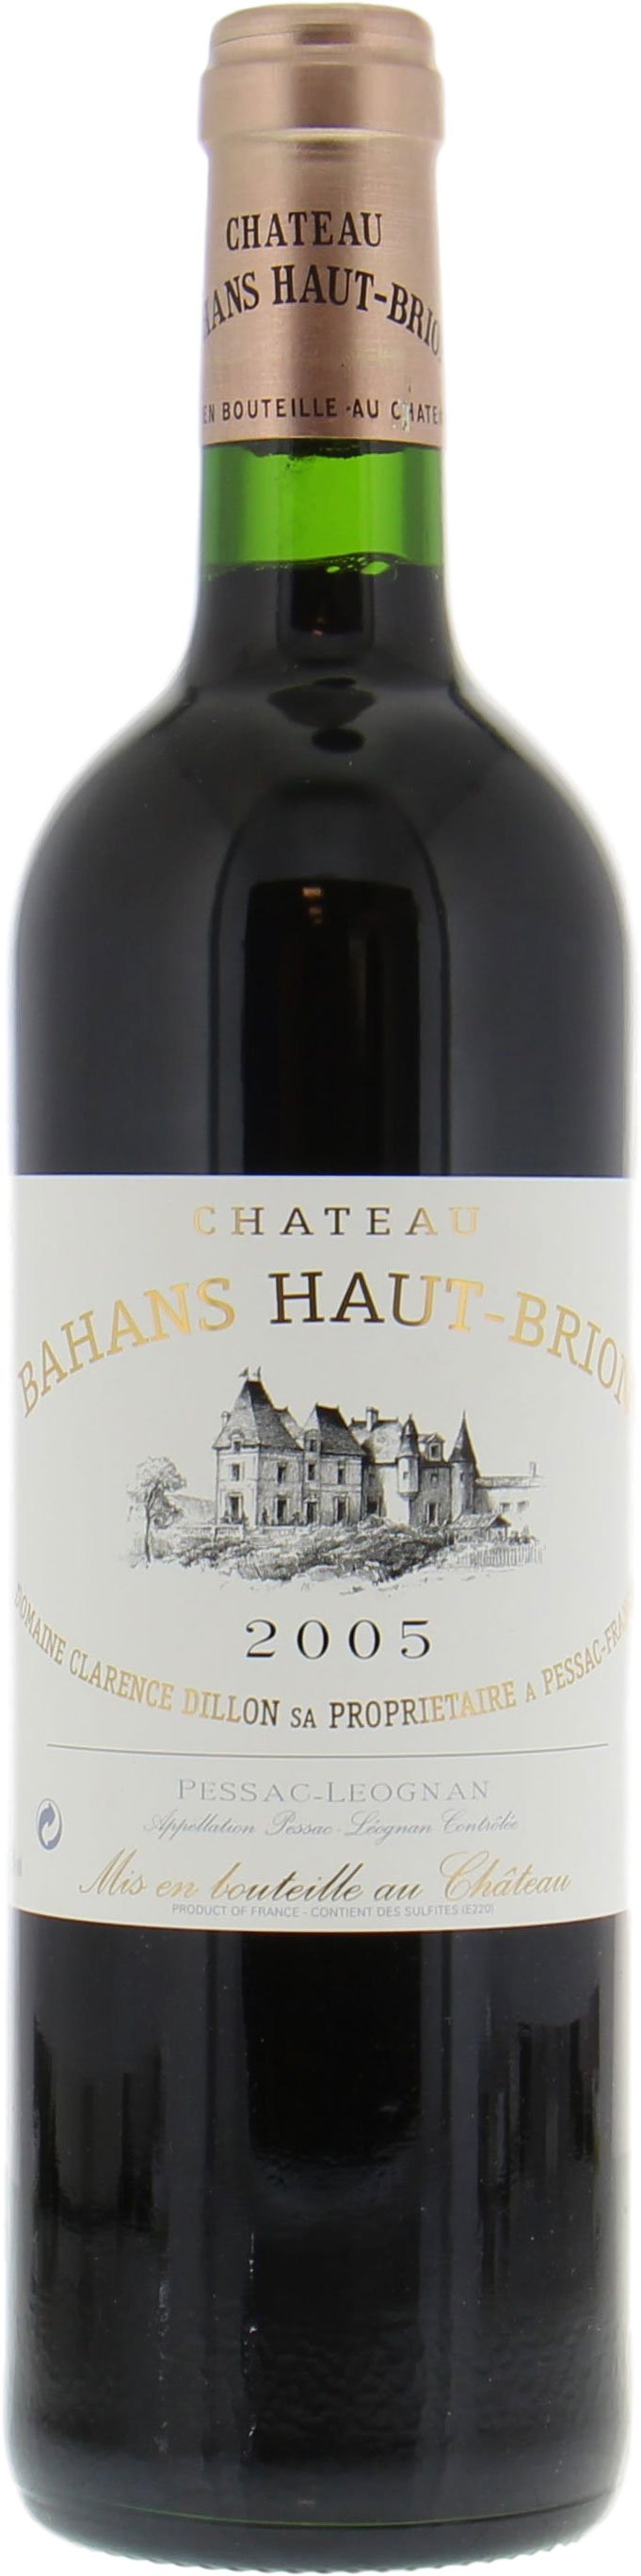 Chateau Haut Brion - Bahans Haut Brion 2005